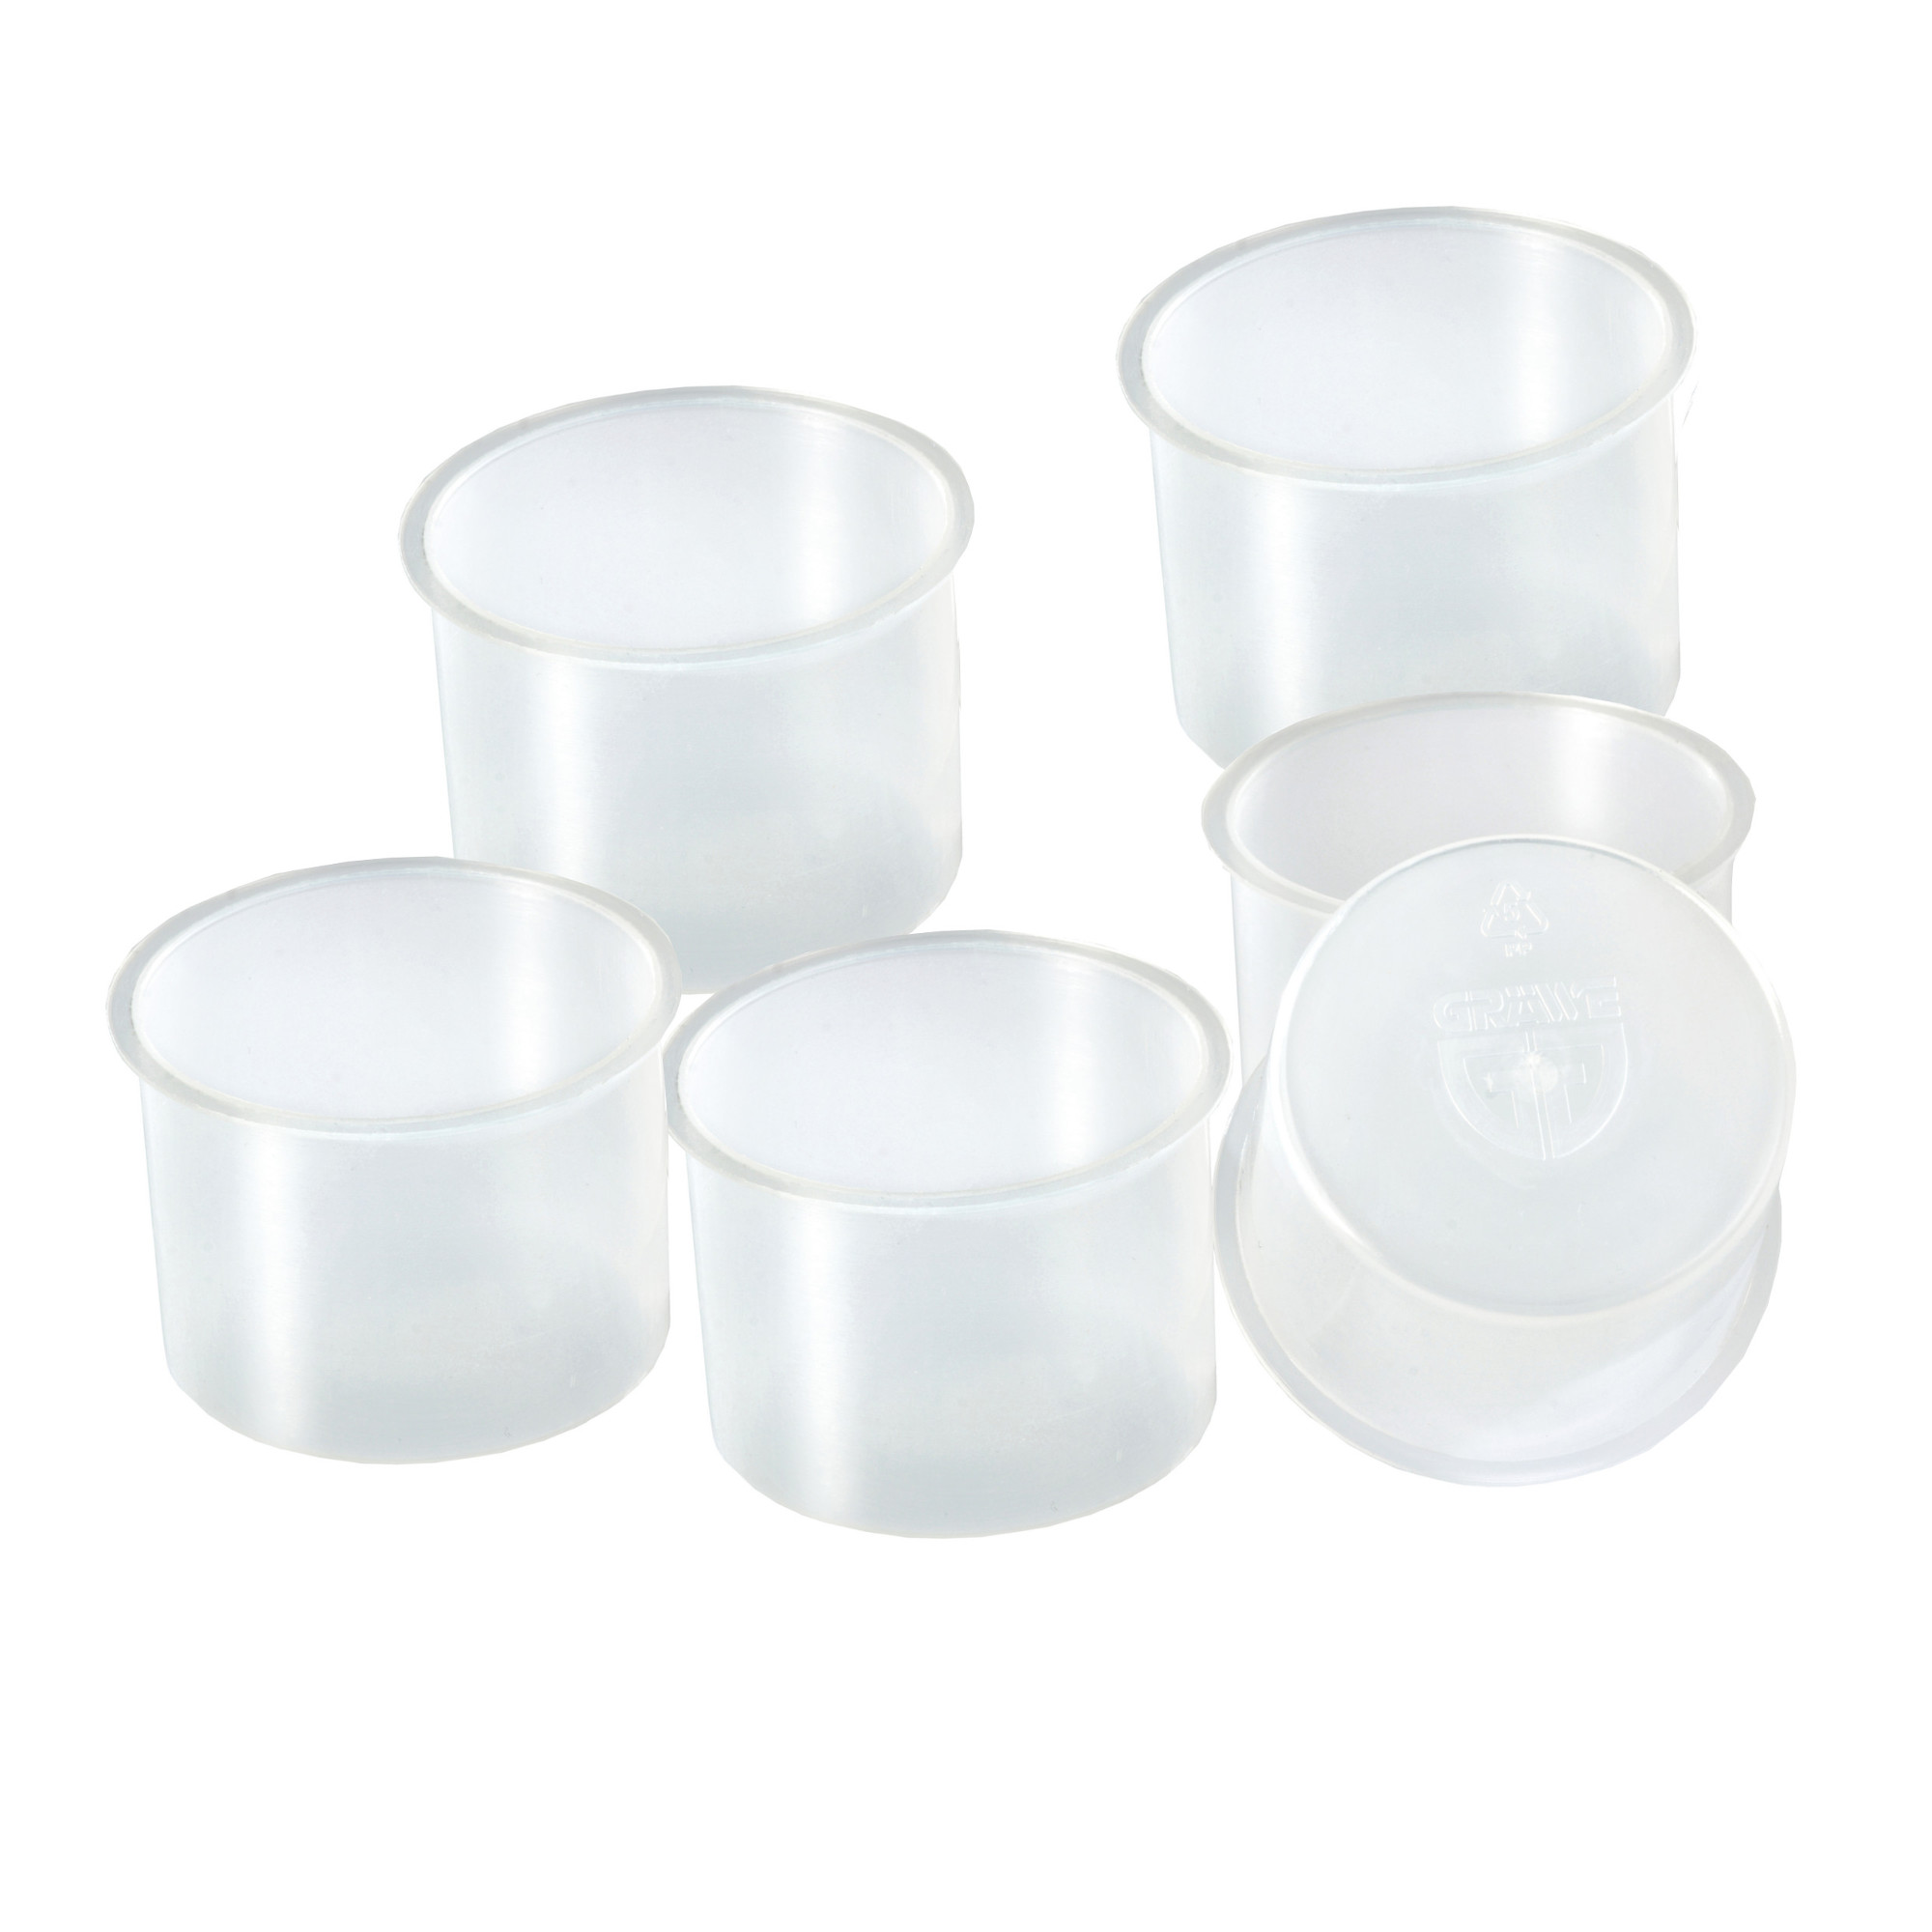 Henkel-Trinkglas mit Deckel und Strohhalm 4 Stück inkl. 6 Kunststoffbechern